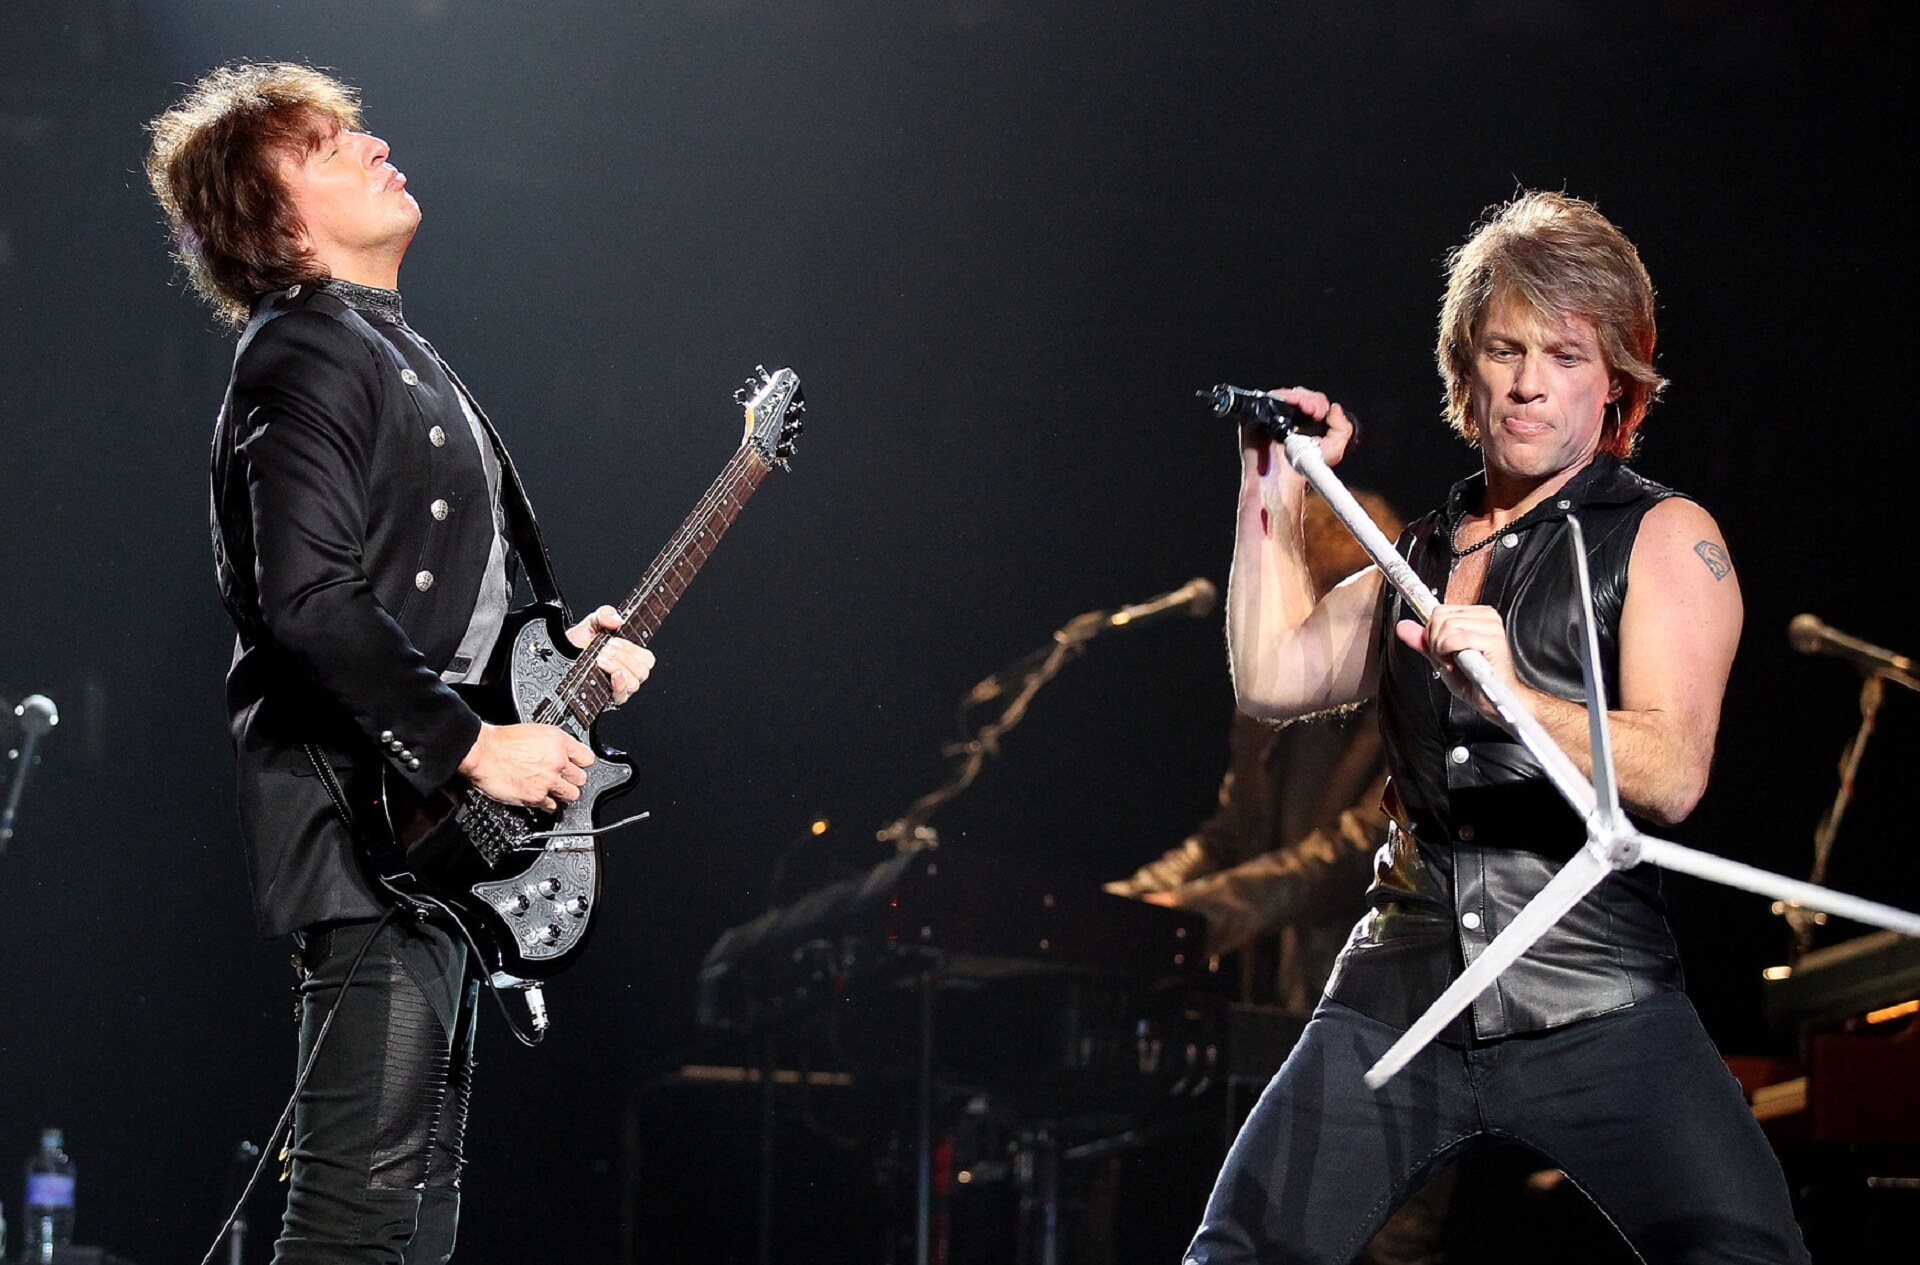 Jon Bon Jovi tampil enerjik di atas panggung saat menghibur penggemarnya